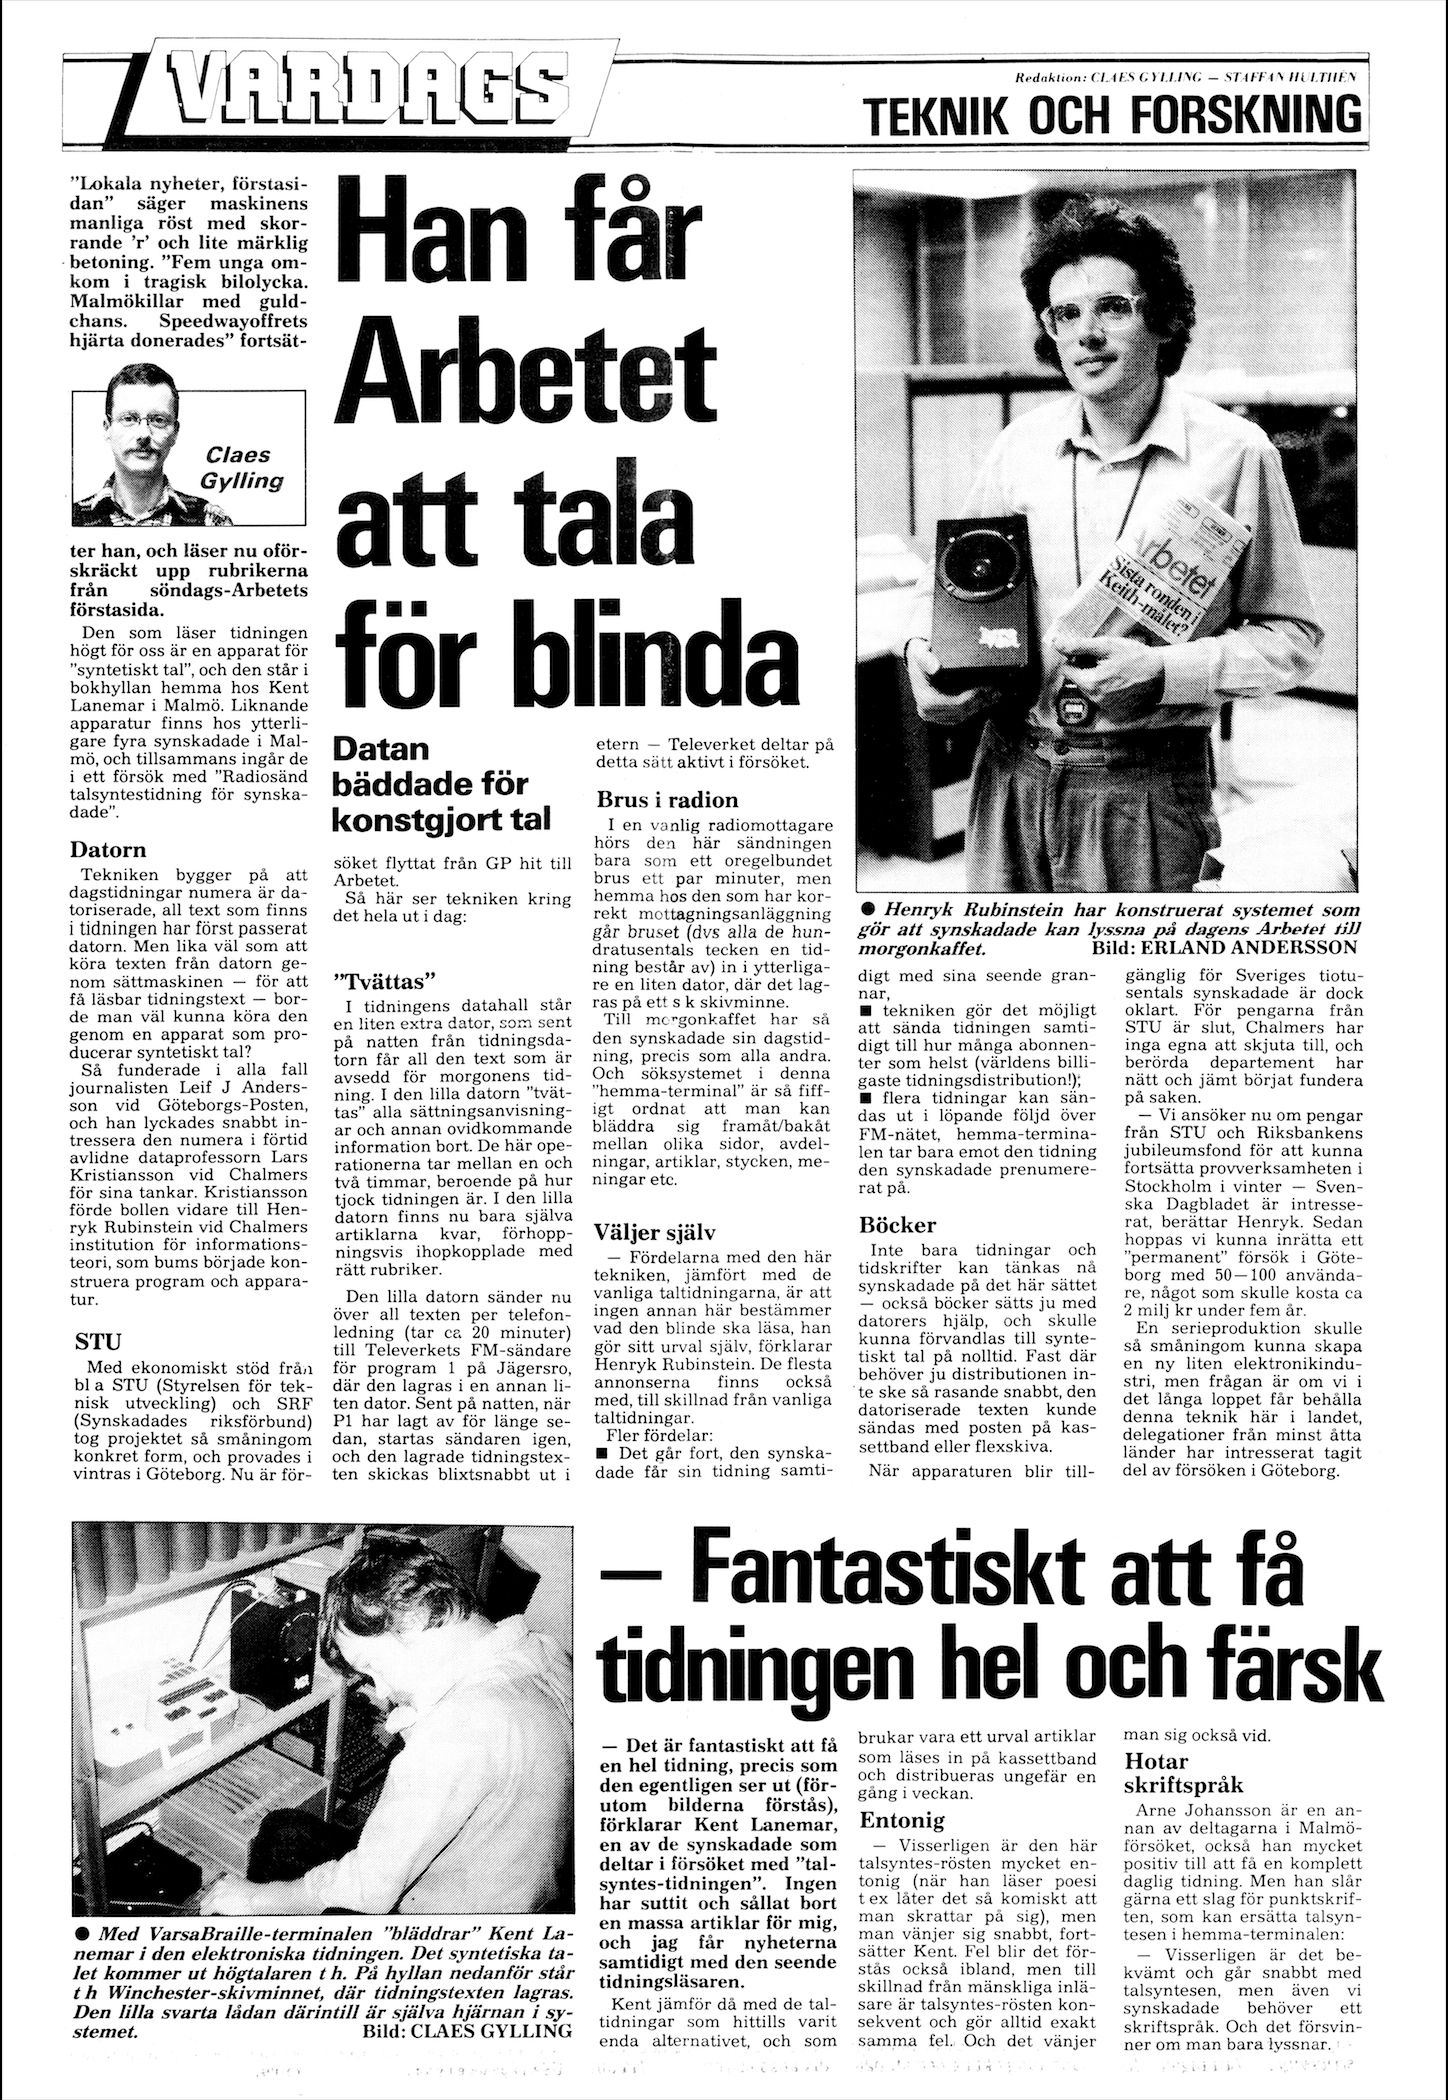 1987-1988: Textalk. För synskadade.